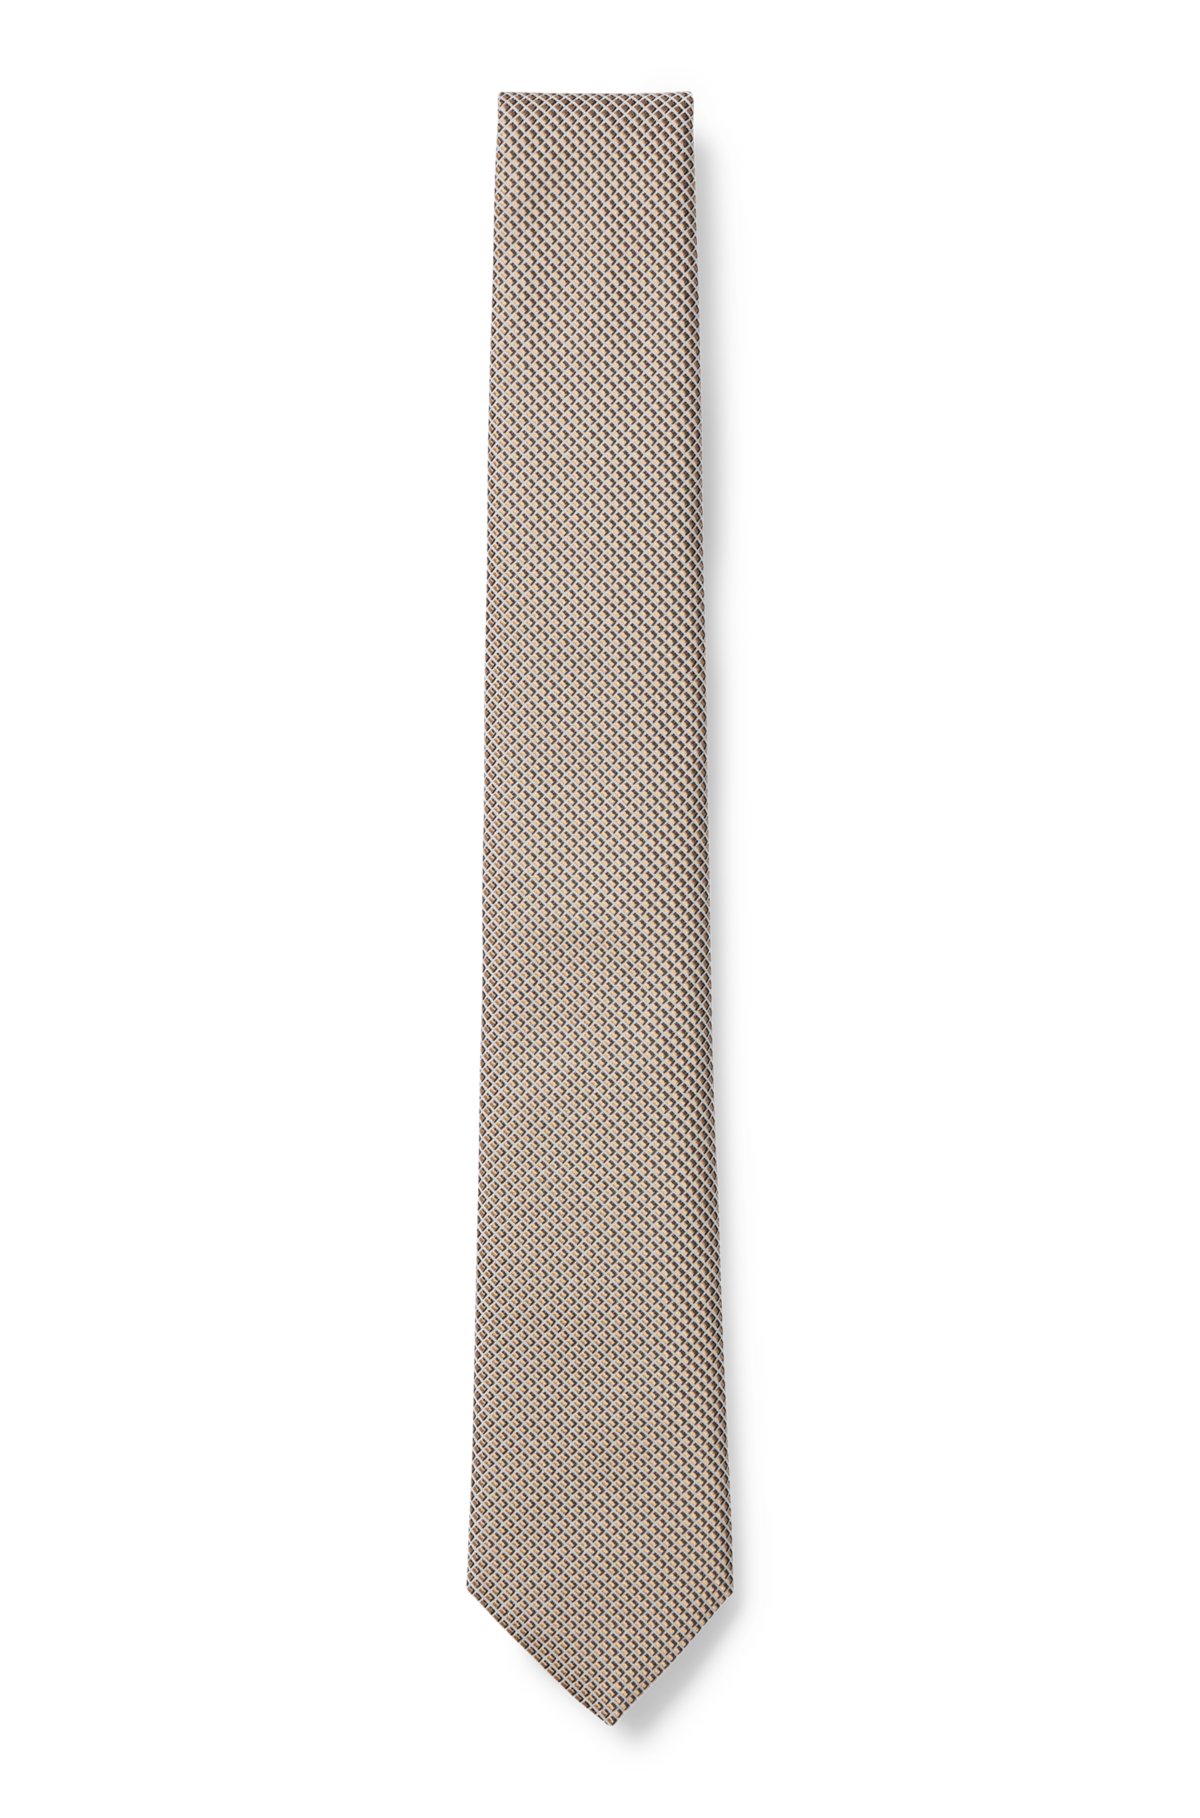 Brown micro-patterned silk tie